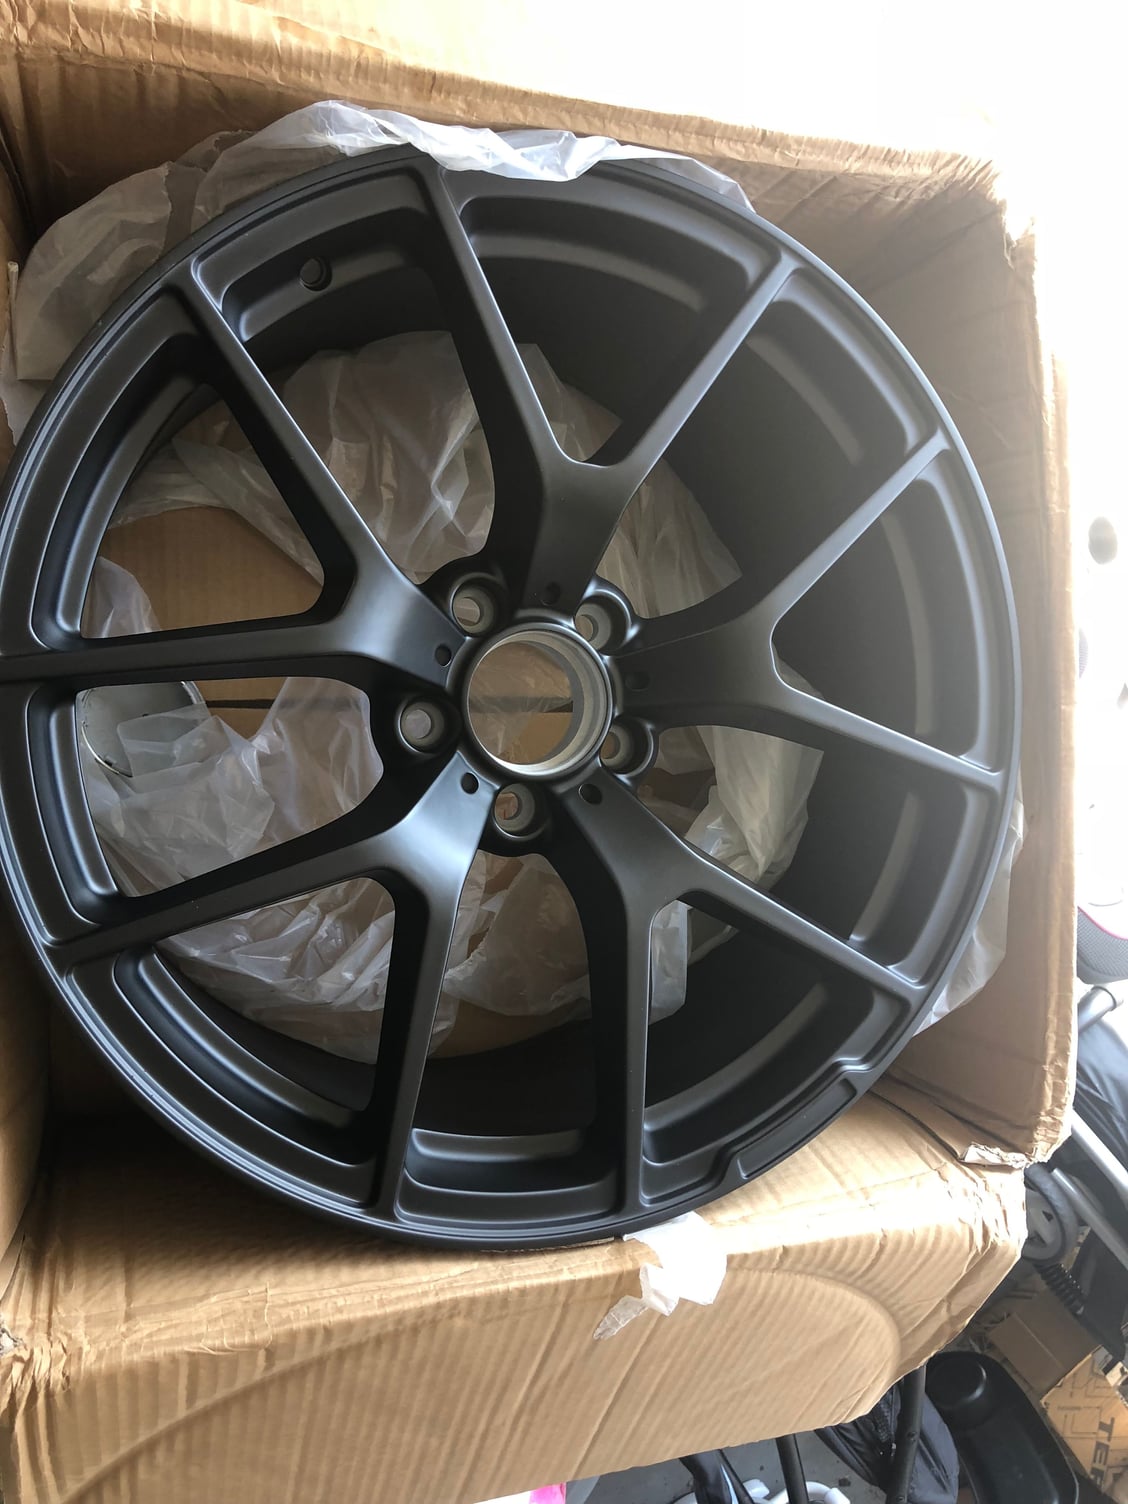 Wheels and Tires/Axles - 19" AMG STYLE Black wheels - New - Lindenhurst, NY 11757, United States